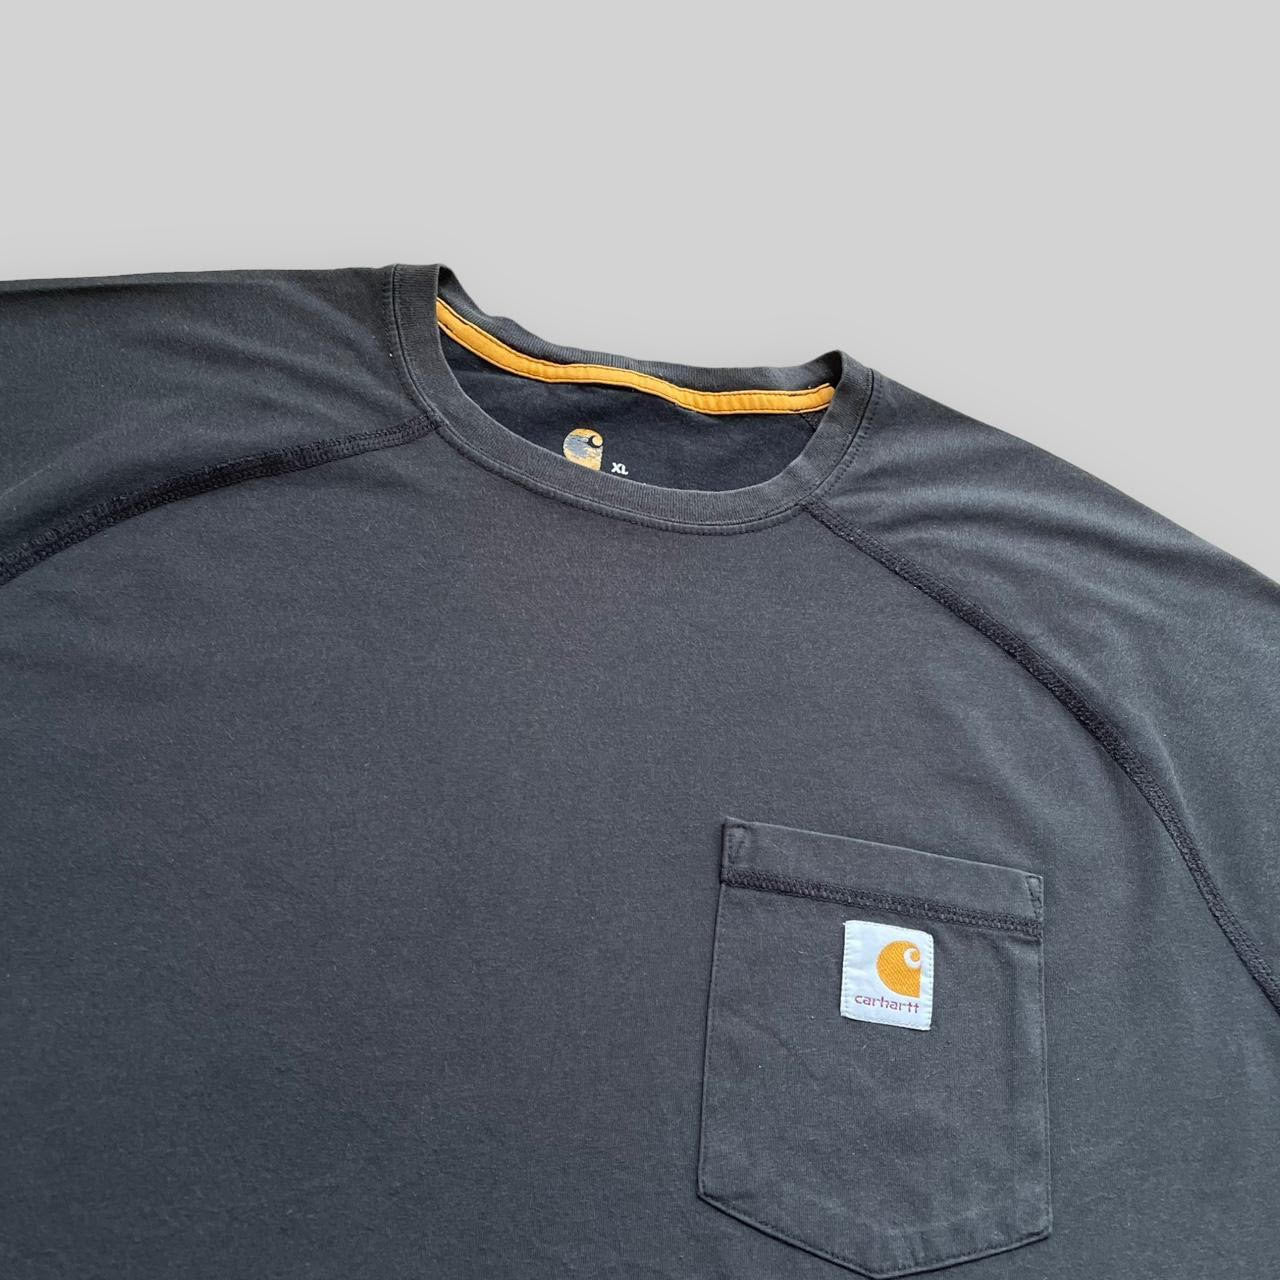 Carhartt Force Pocket Logo T Shirt (XL)